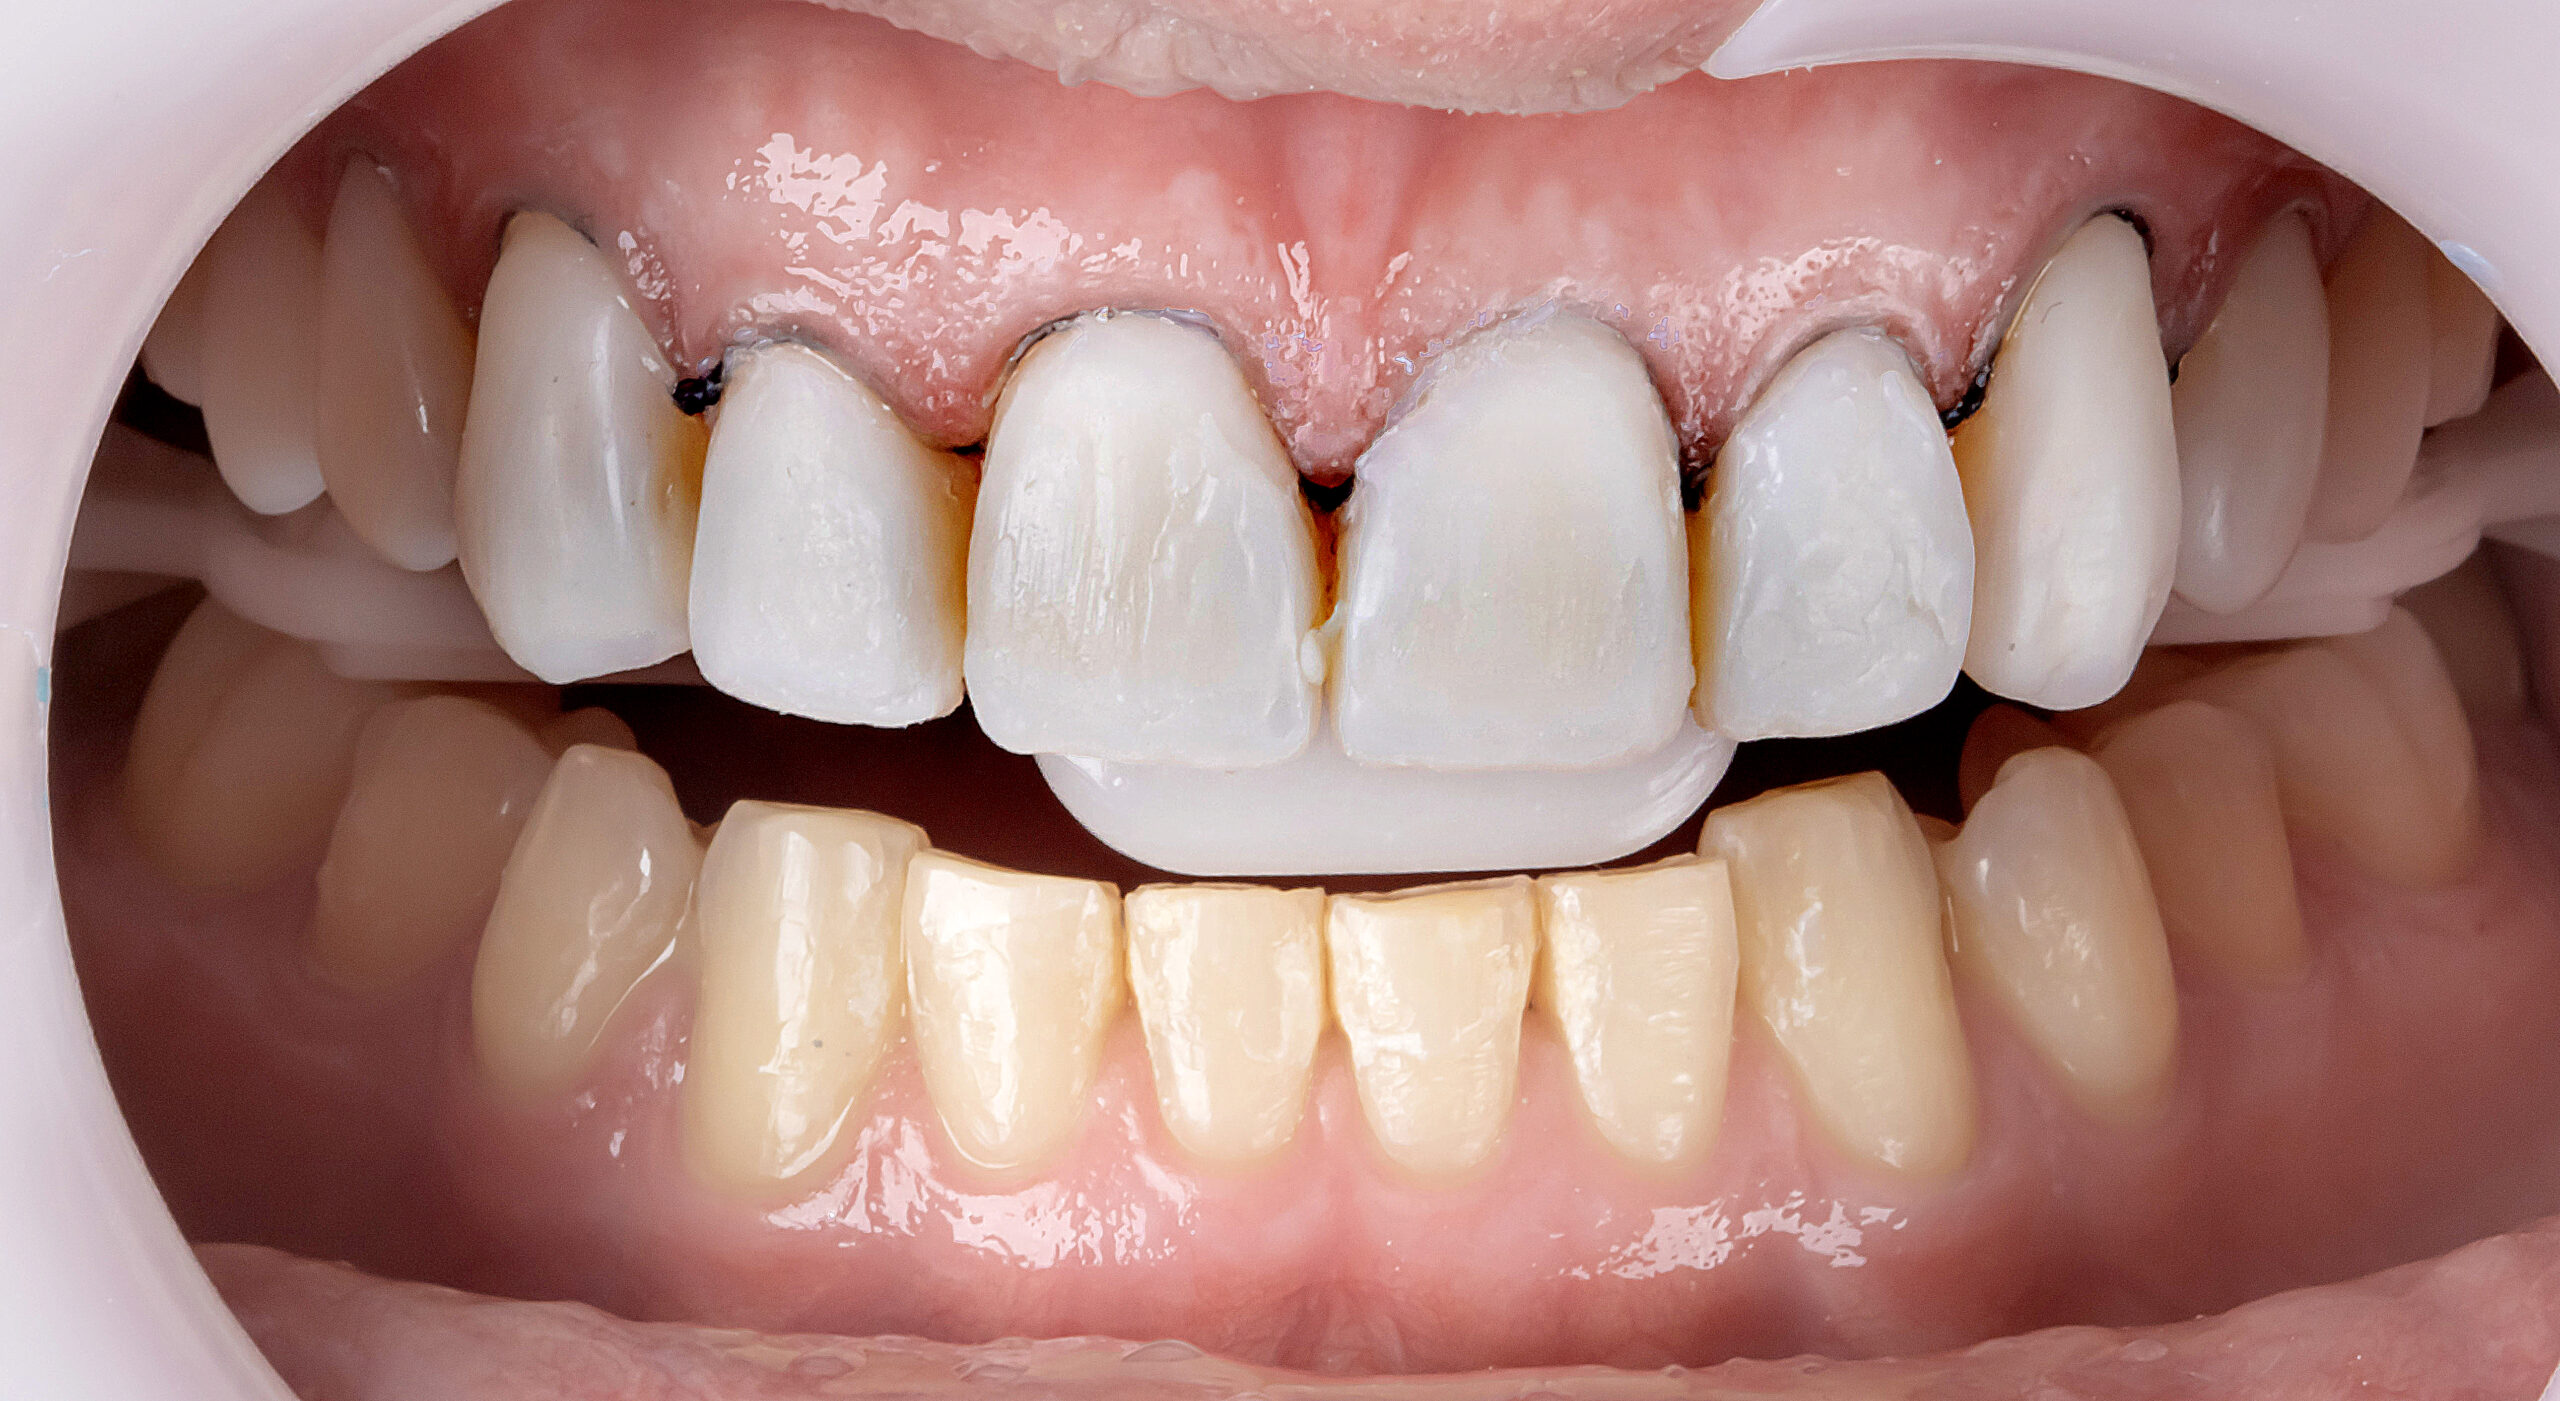 15 | Finalização dos demais elementos dentais com a mesma sequência de cores. 